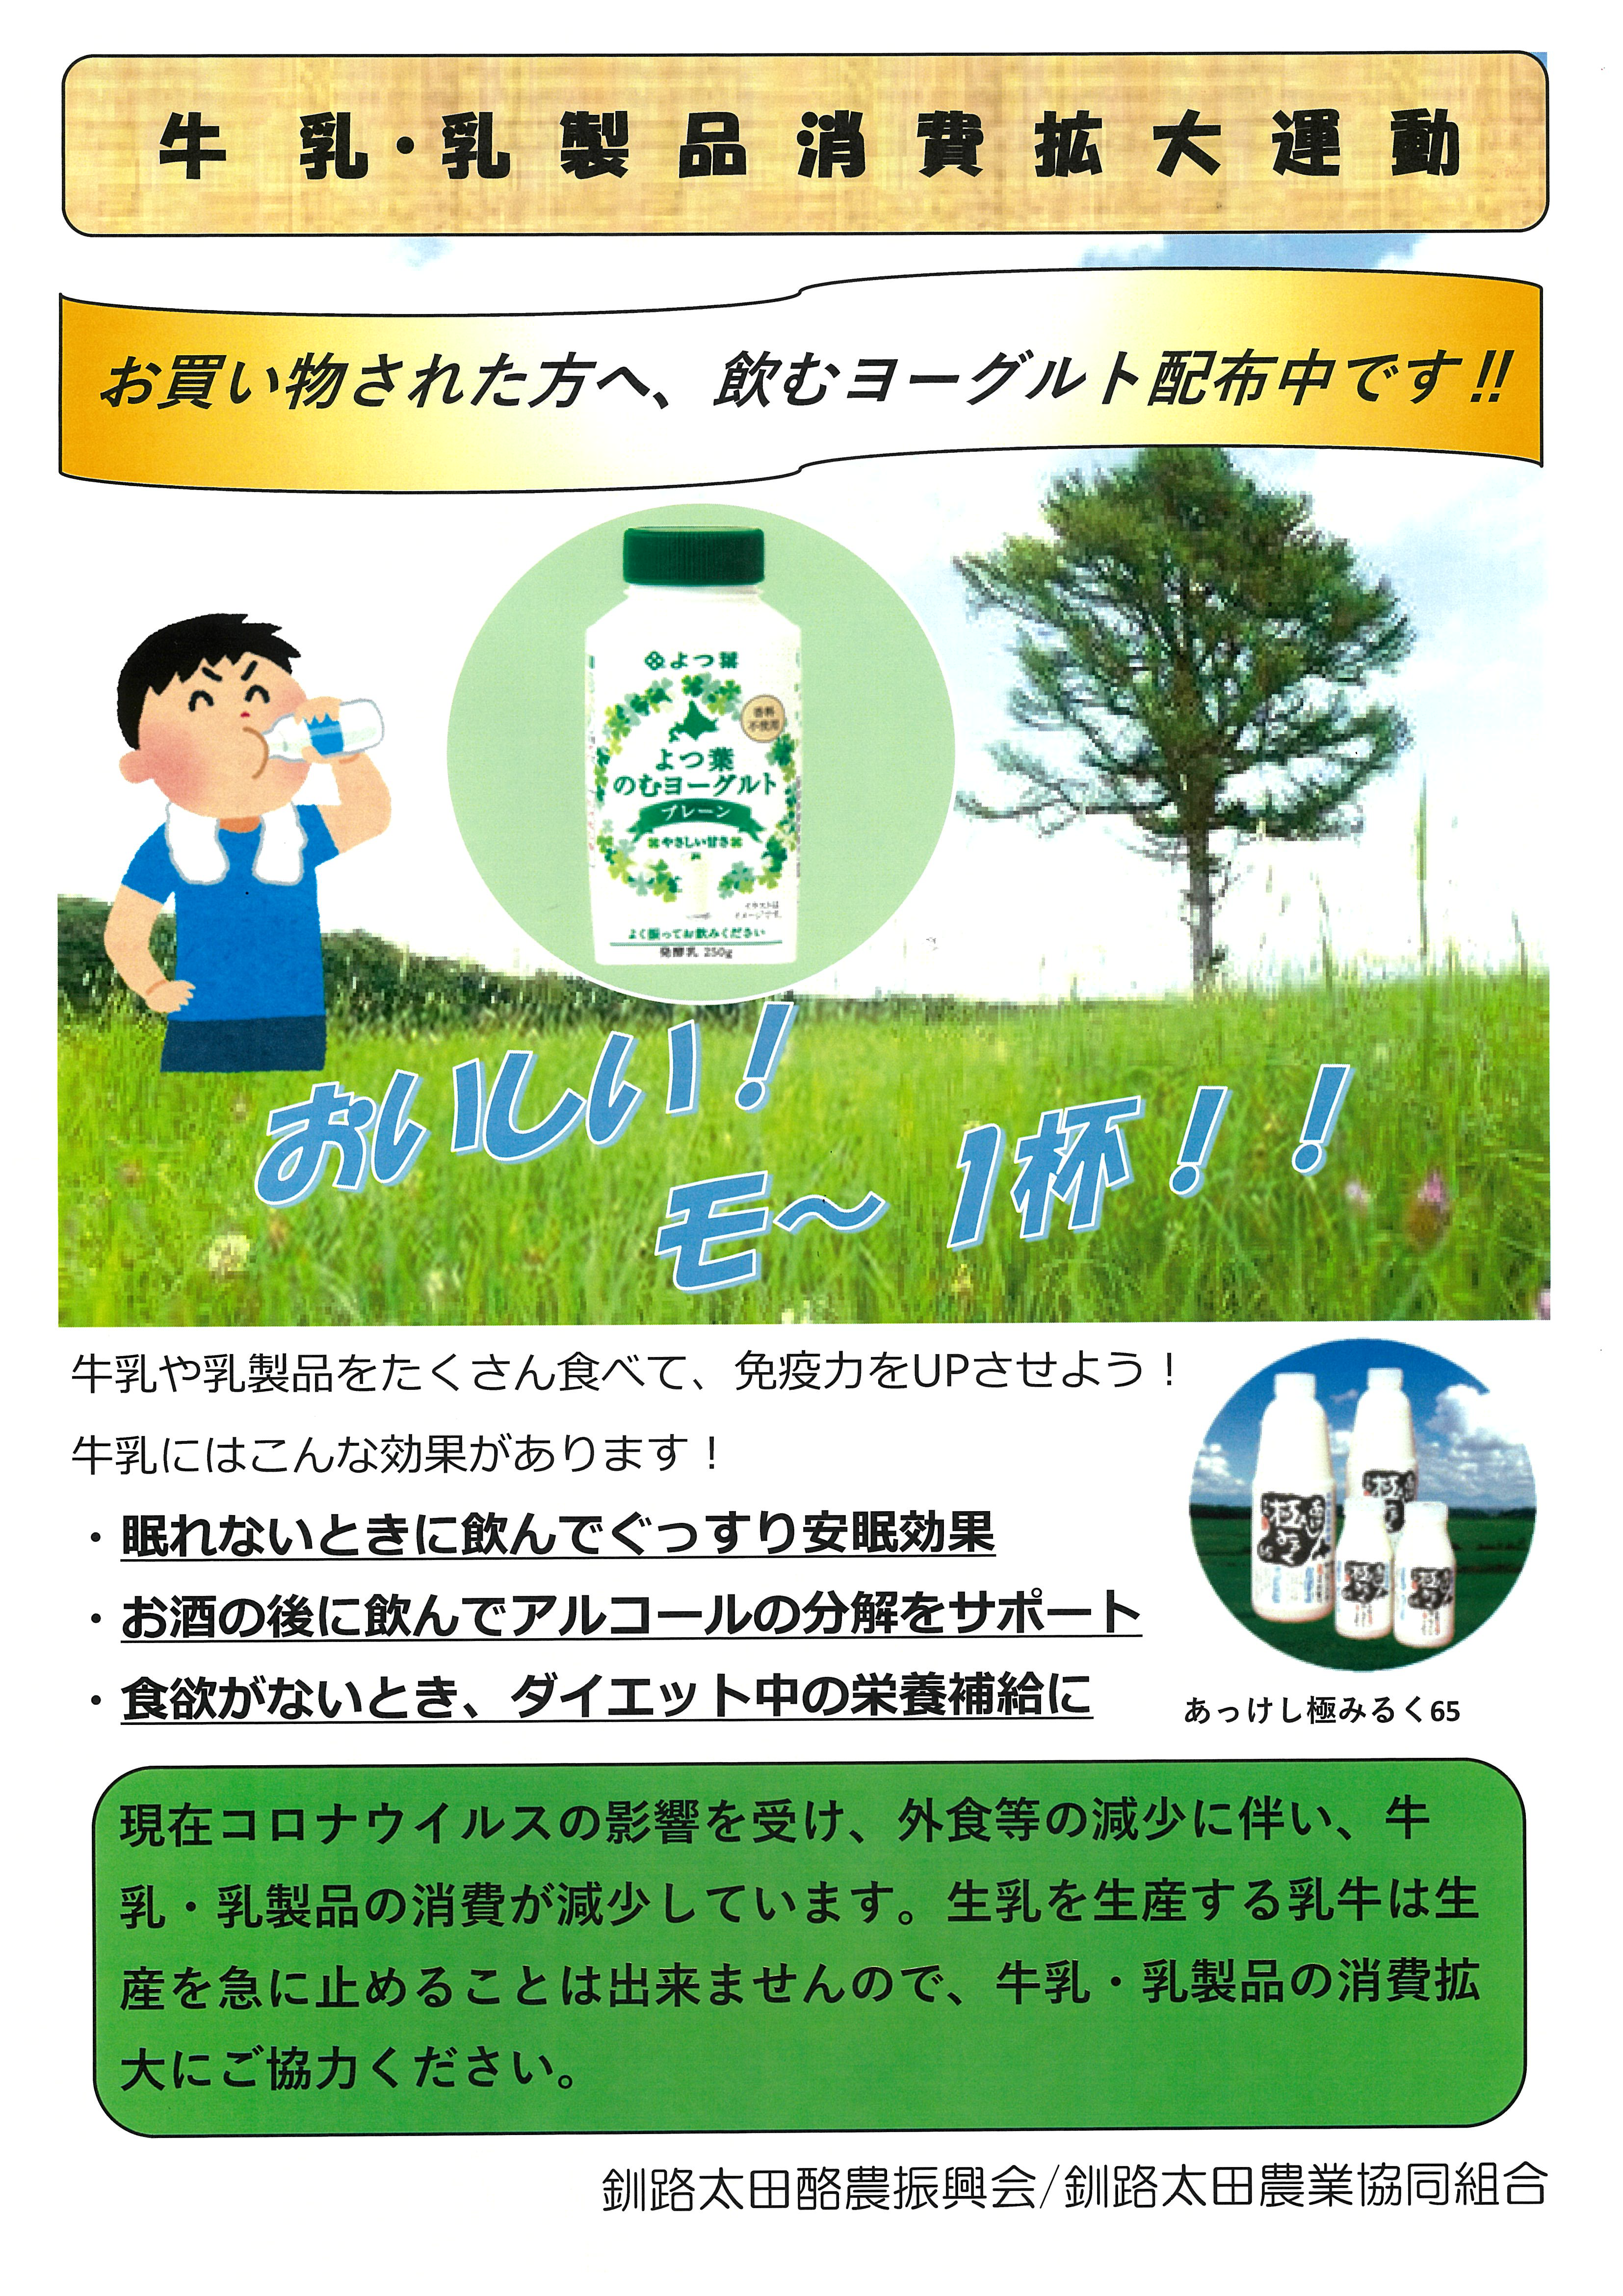 乳製品消費拡大運動 実施するミル 釧路太田農業協同組合